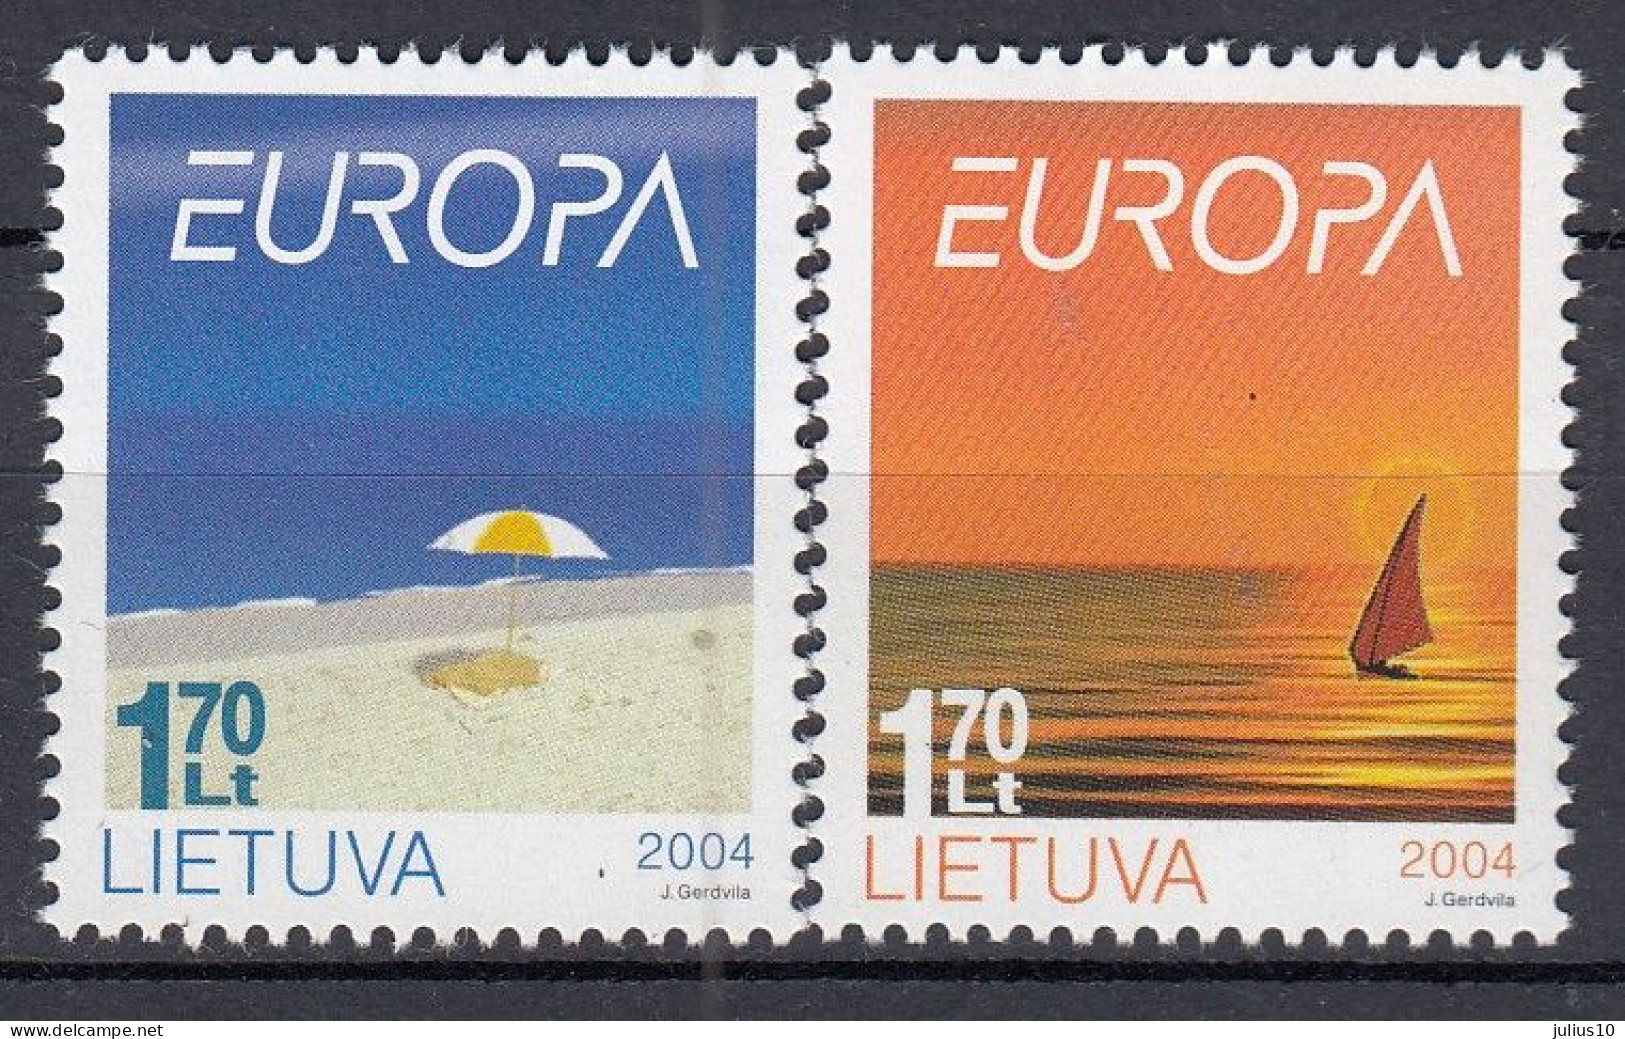 LITHUANIA 2004 Europa Holiday MNH(**) Mi 842-843 #Lt1004 - Lituania